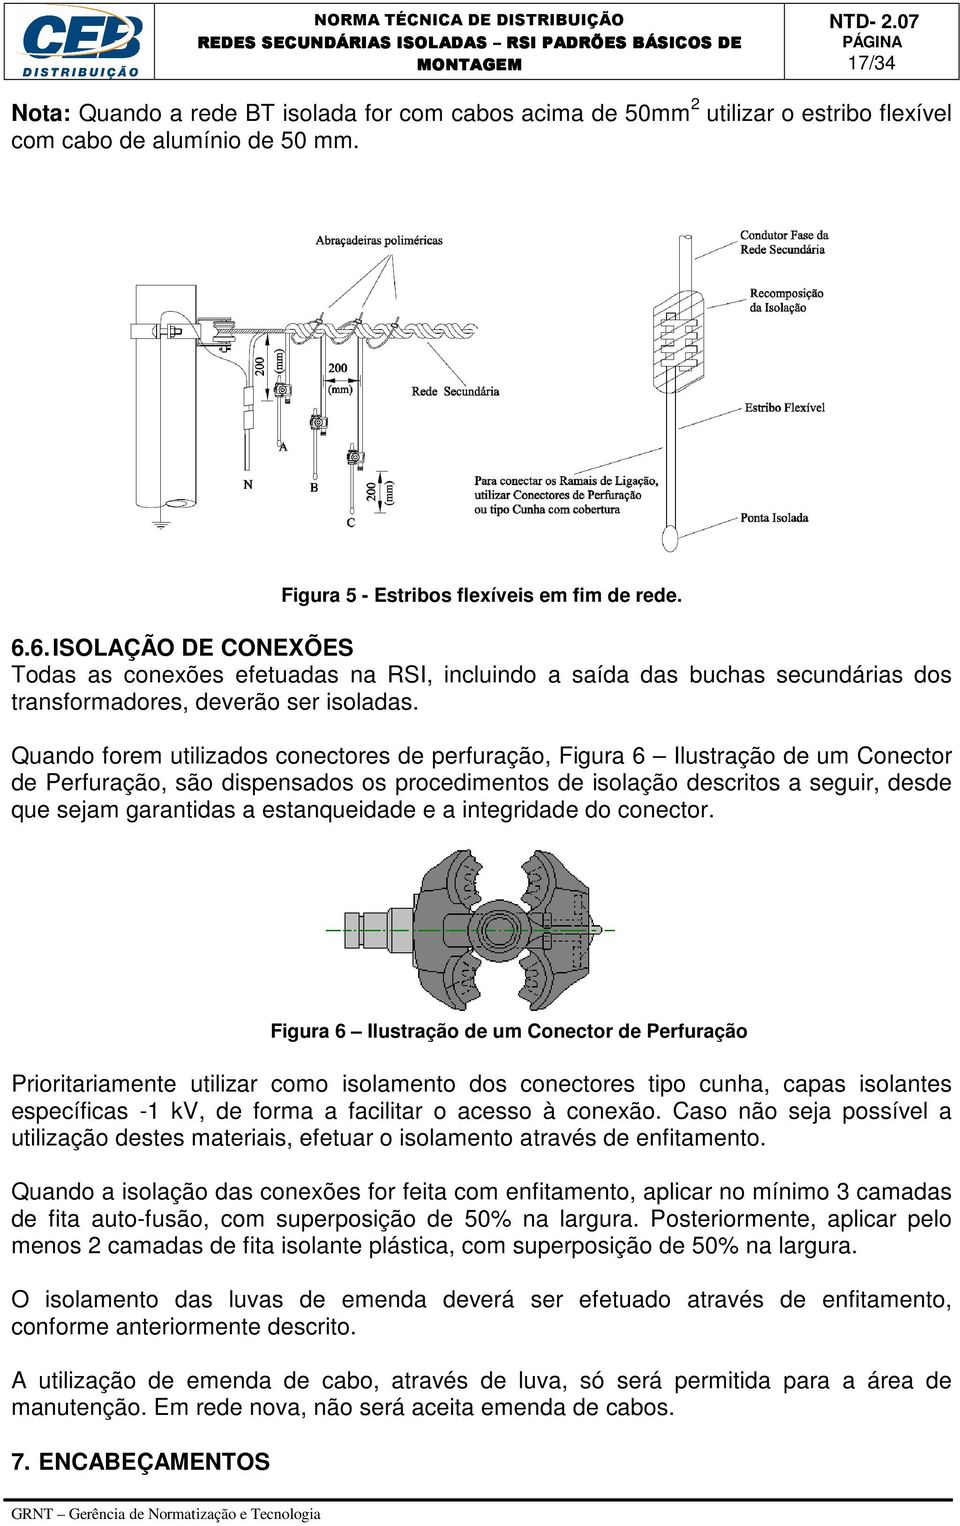 Quando forem utilizados conectores de perfuração, Figura 6 Ilustração de um Conector de Perfuração, são dispensados os procedimentos de isolação descritos a seguir, desde que sejam garantidas a